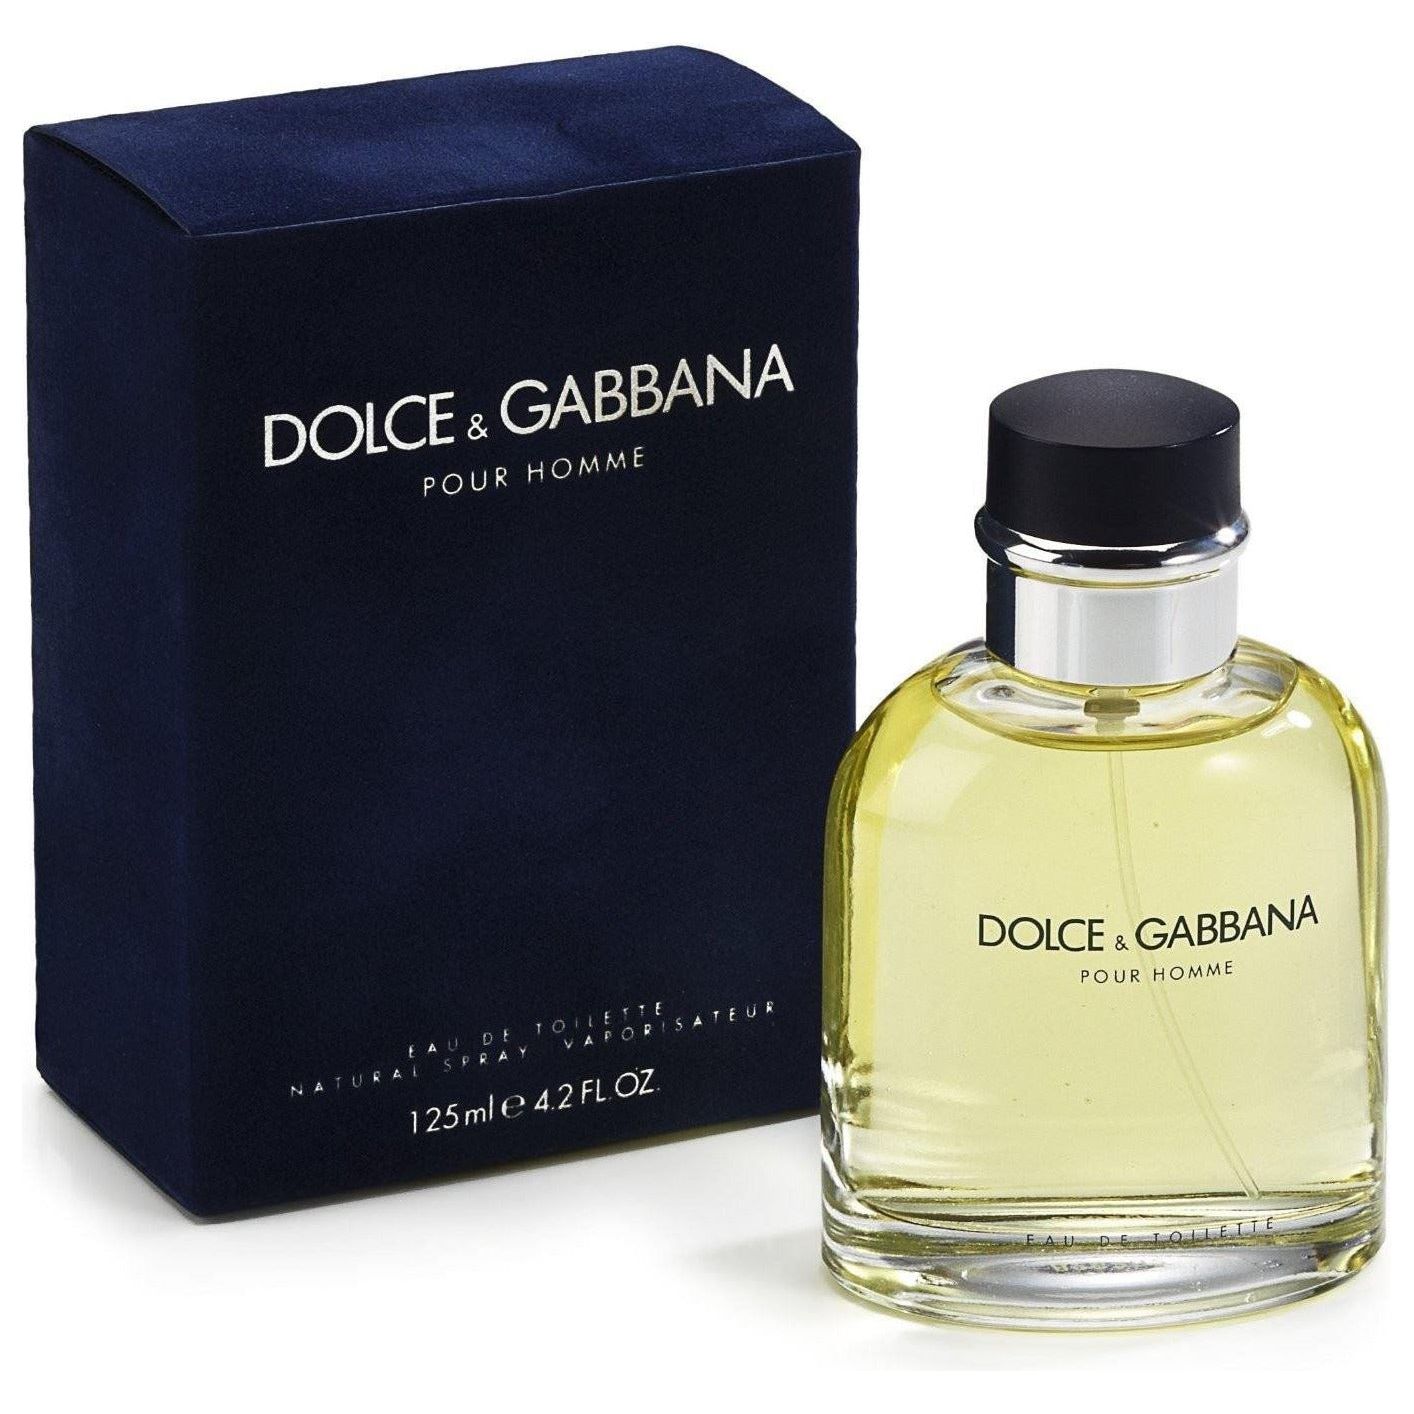 Dolce & Gabbana D & G Pour Homme 4.2 oz EDT Cologne for Men – Perfume ...